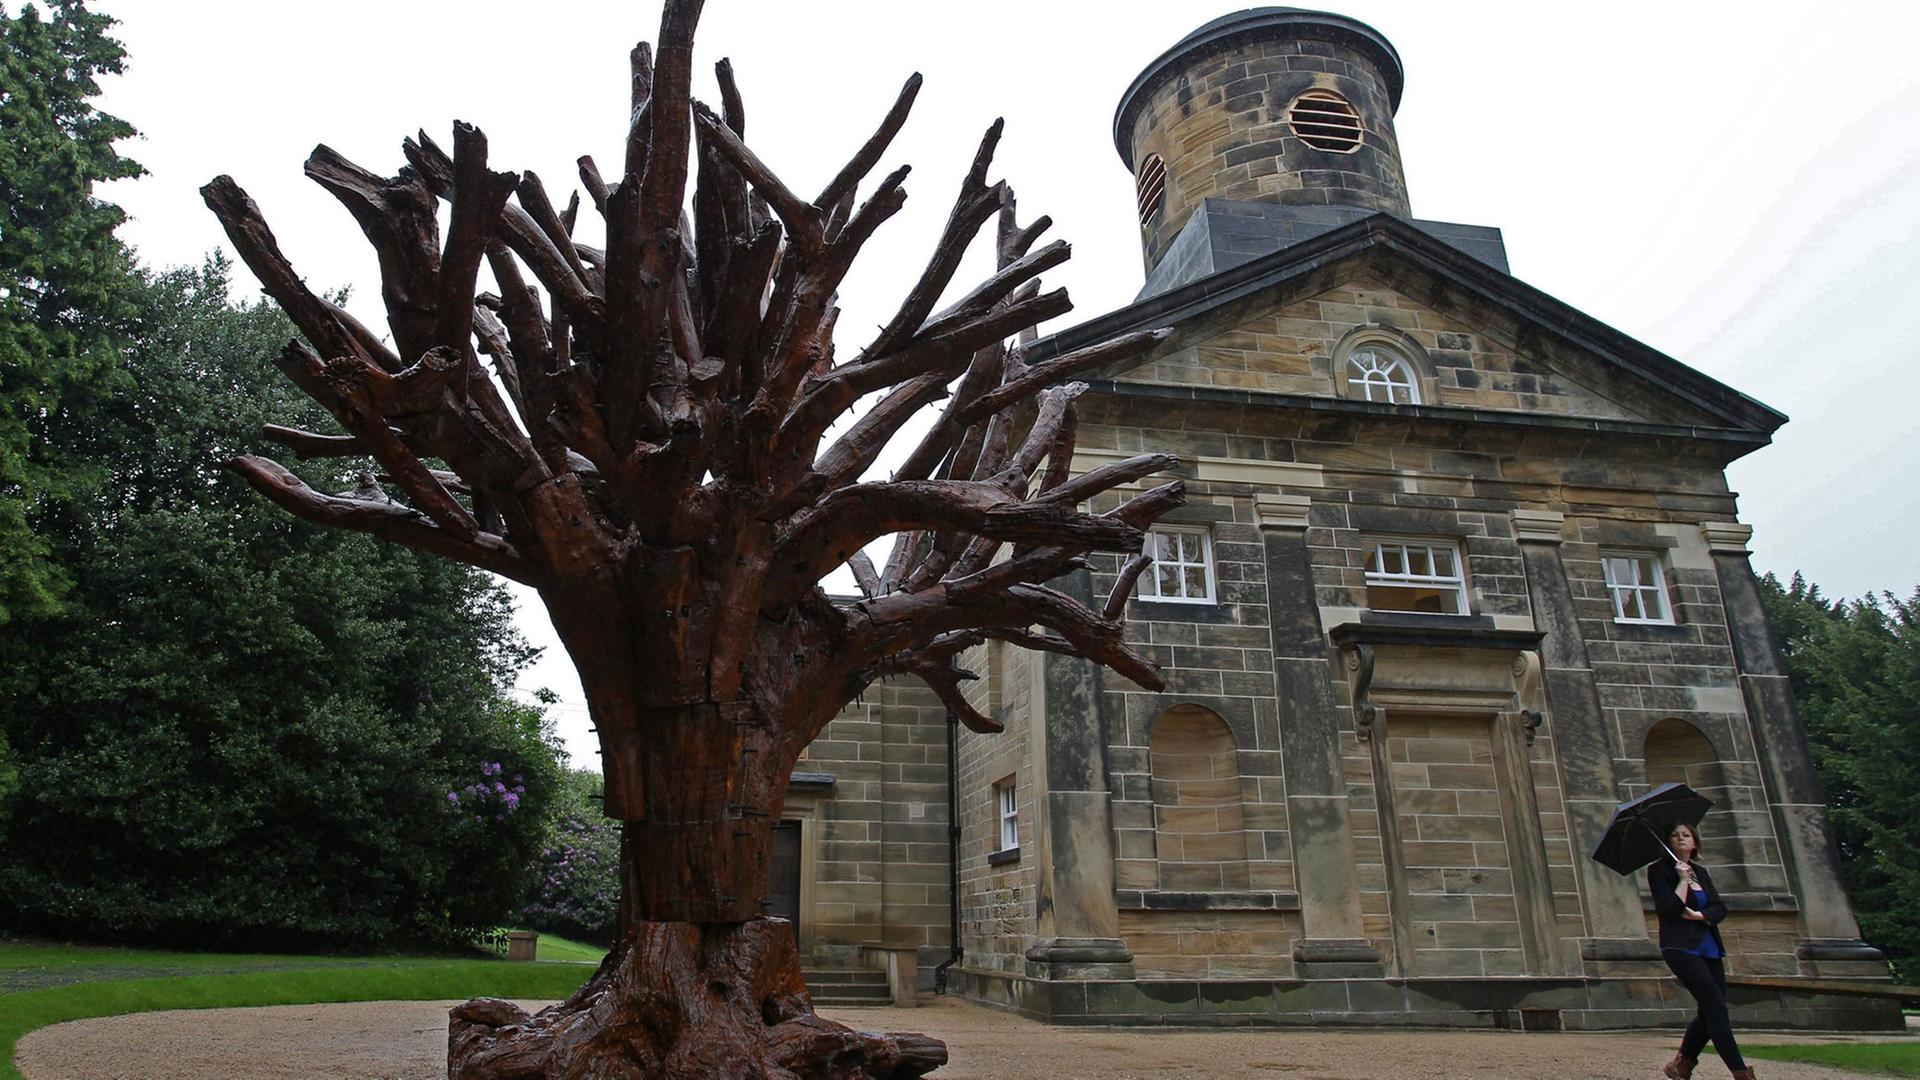 Sechs Meter hoher Eisenbaum - eine Installation des chinesischen Künstlers Ai Weiwei im Yorkshire Sculpture Park in Yorkshire (Großbritannien).